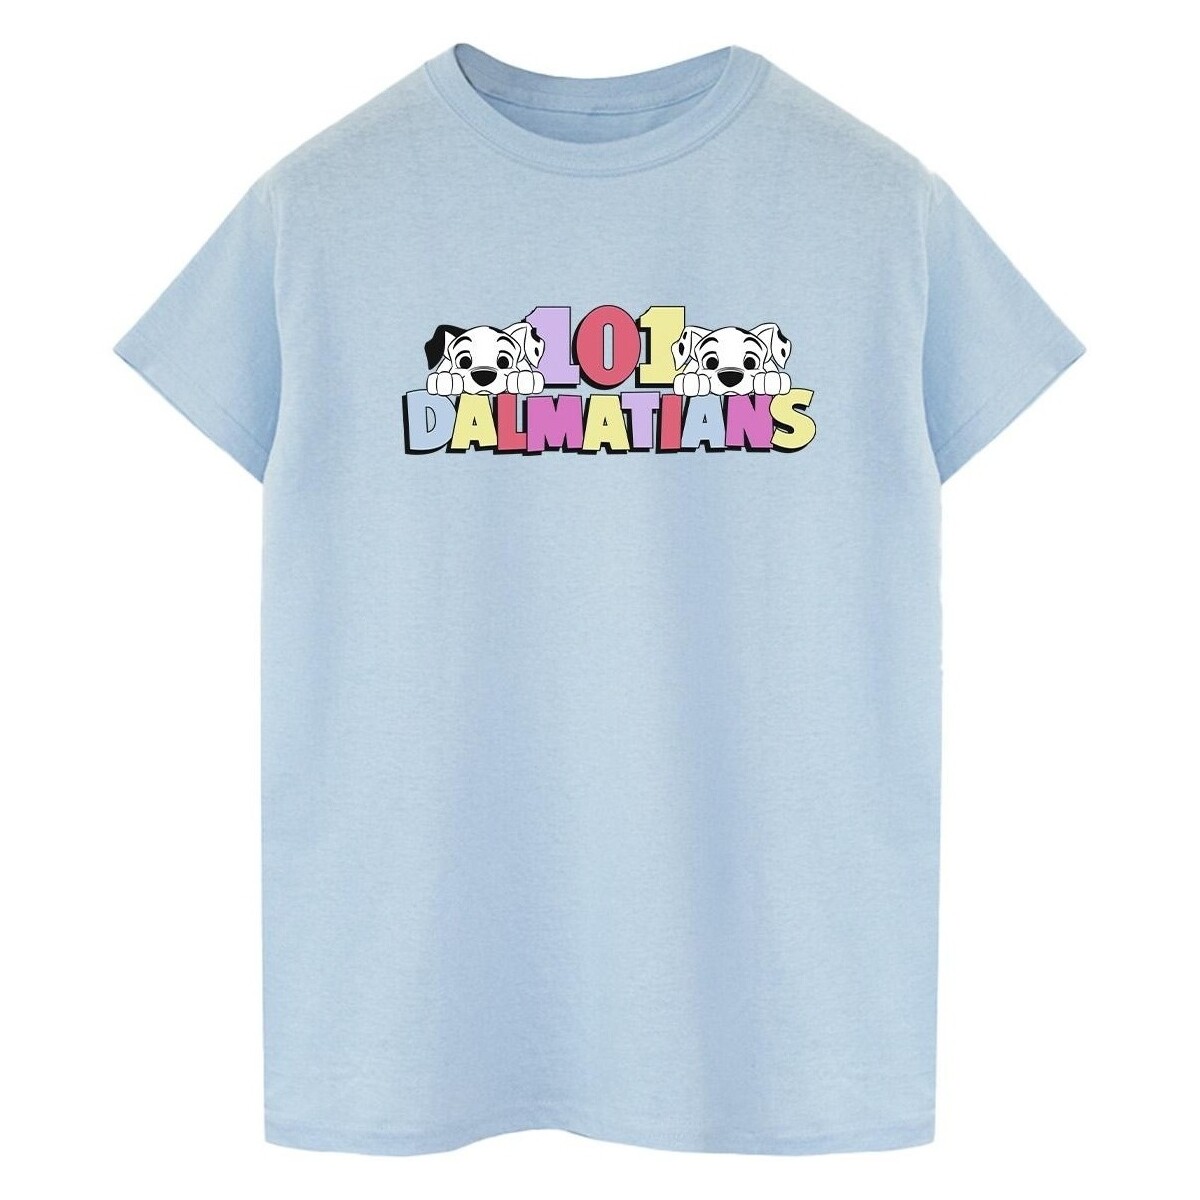 Vêtements Homme T-shirts manches longues Disney 101 Dalmatians Multi Colour Bleu